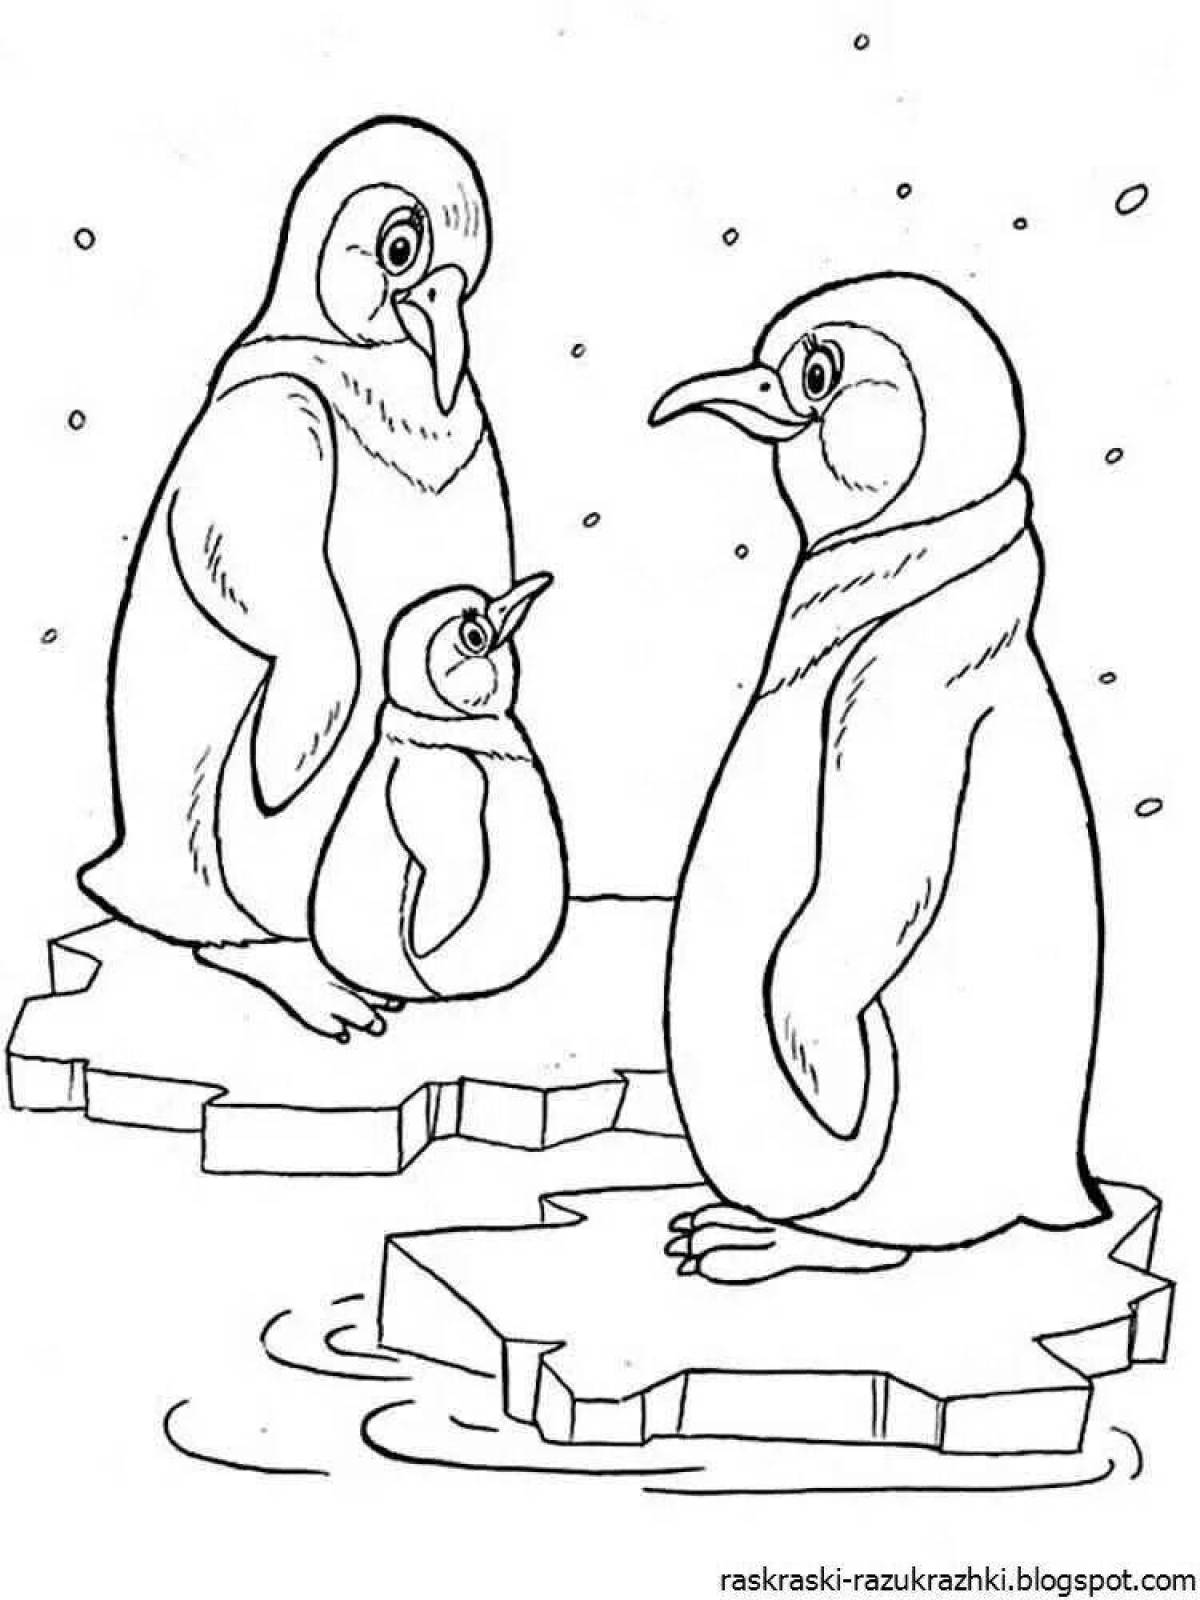 Великолепная раскраска пингвин